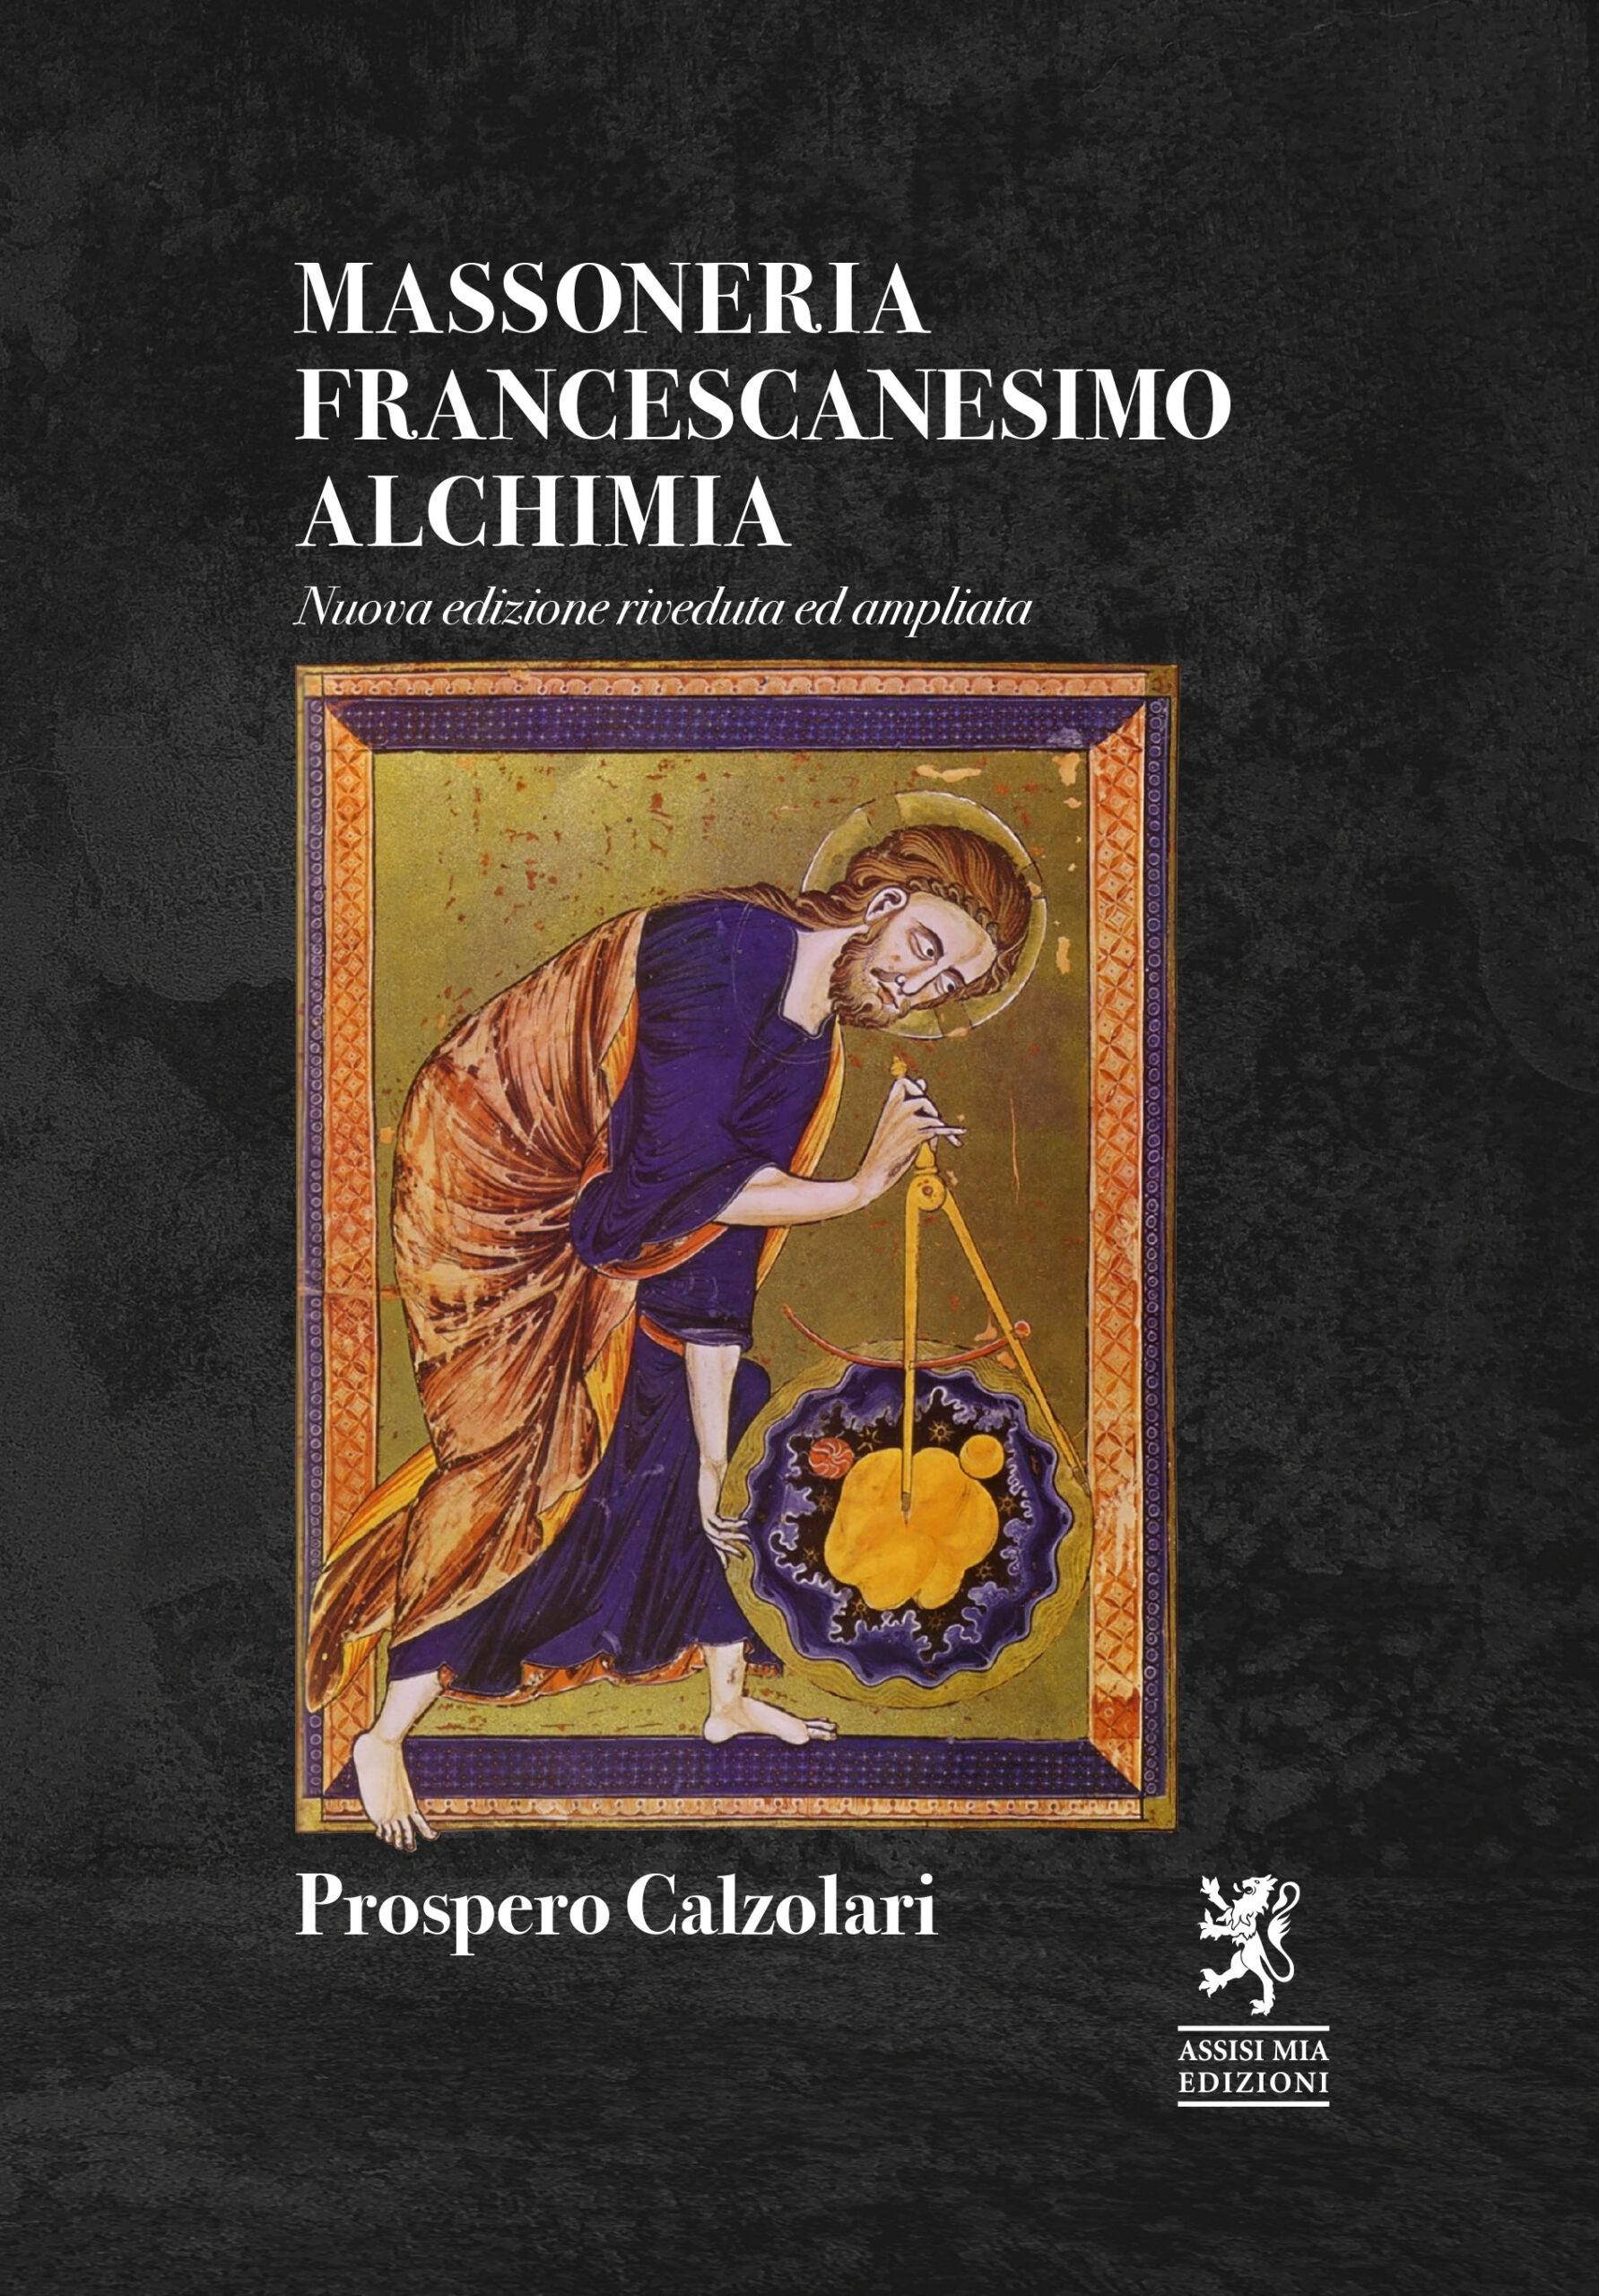 Massoneria Francescanesimo Alchimia